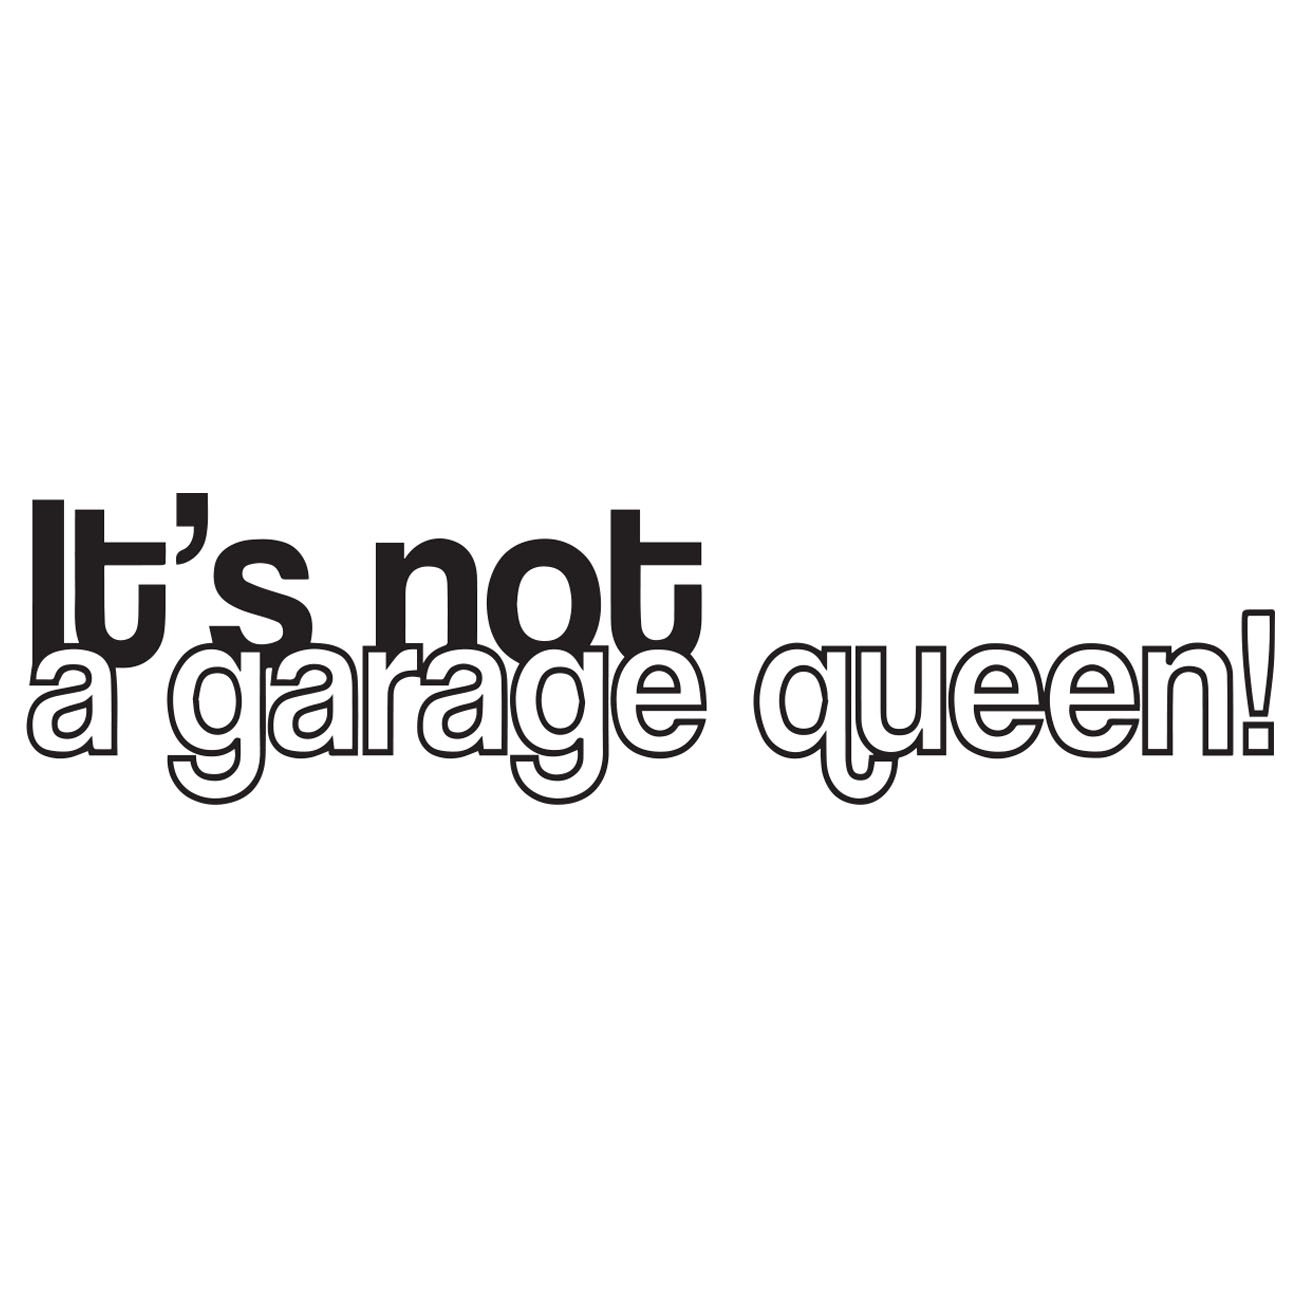 Its not a garage queen!